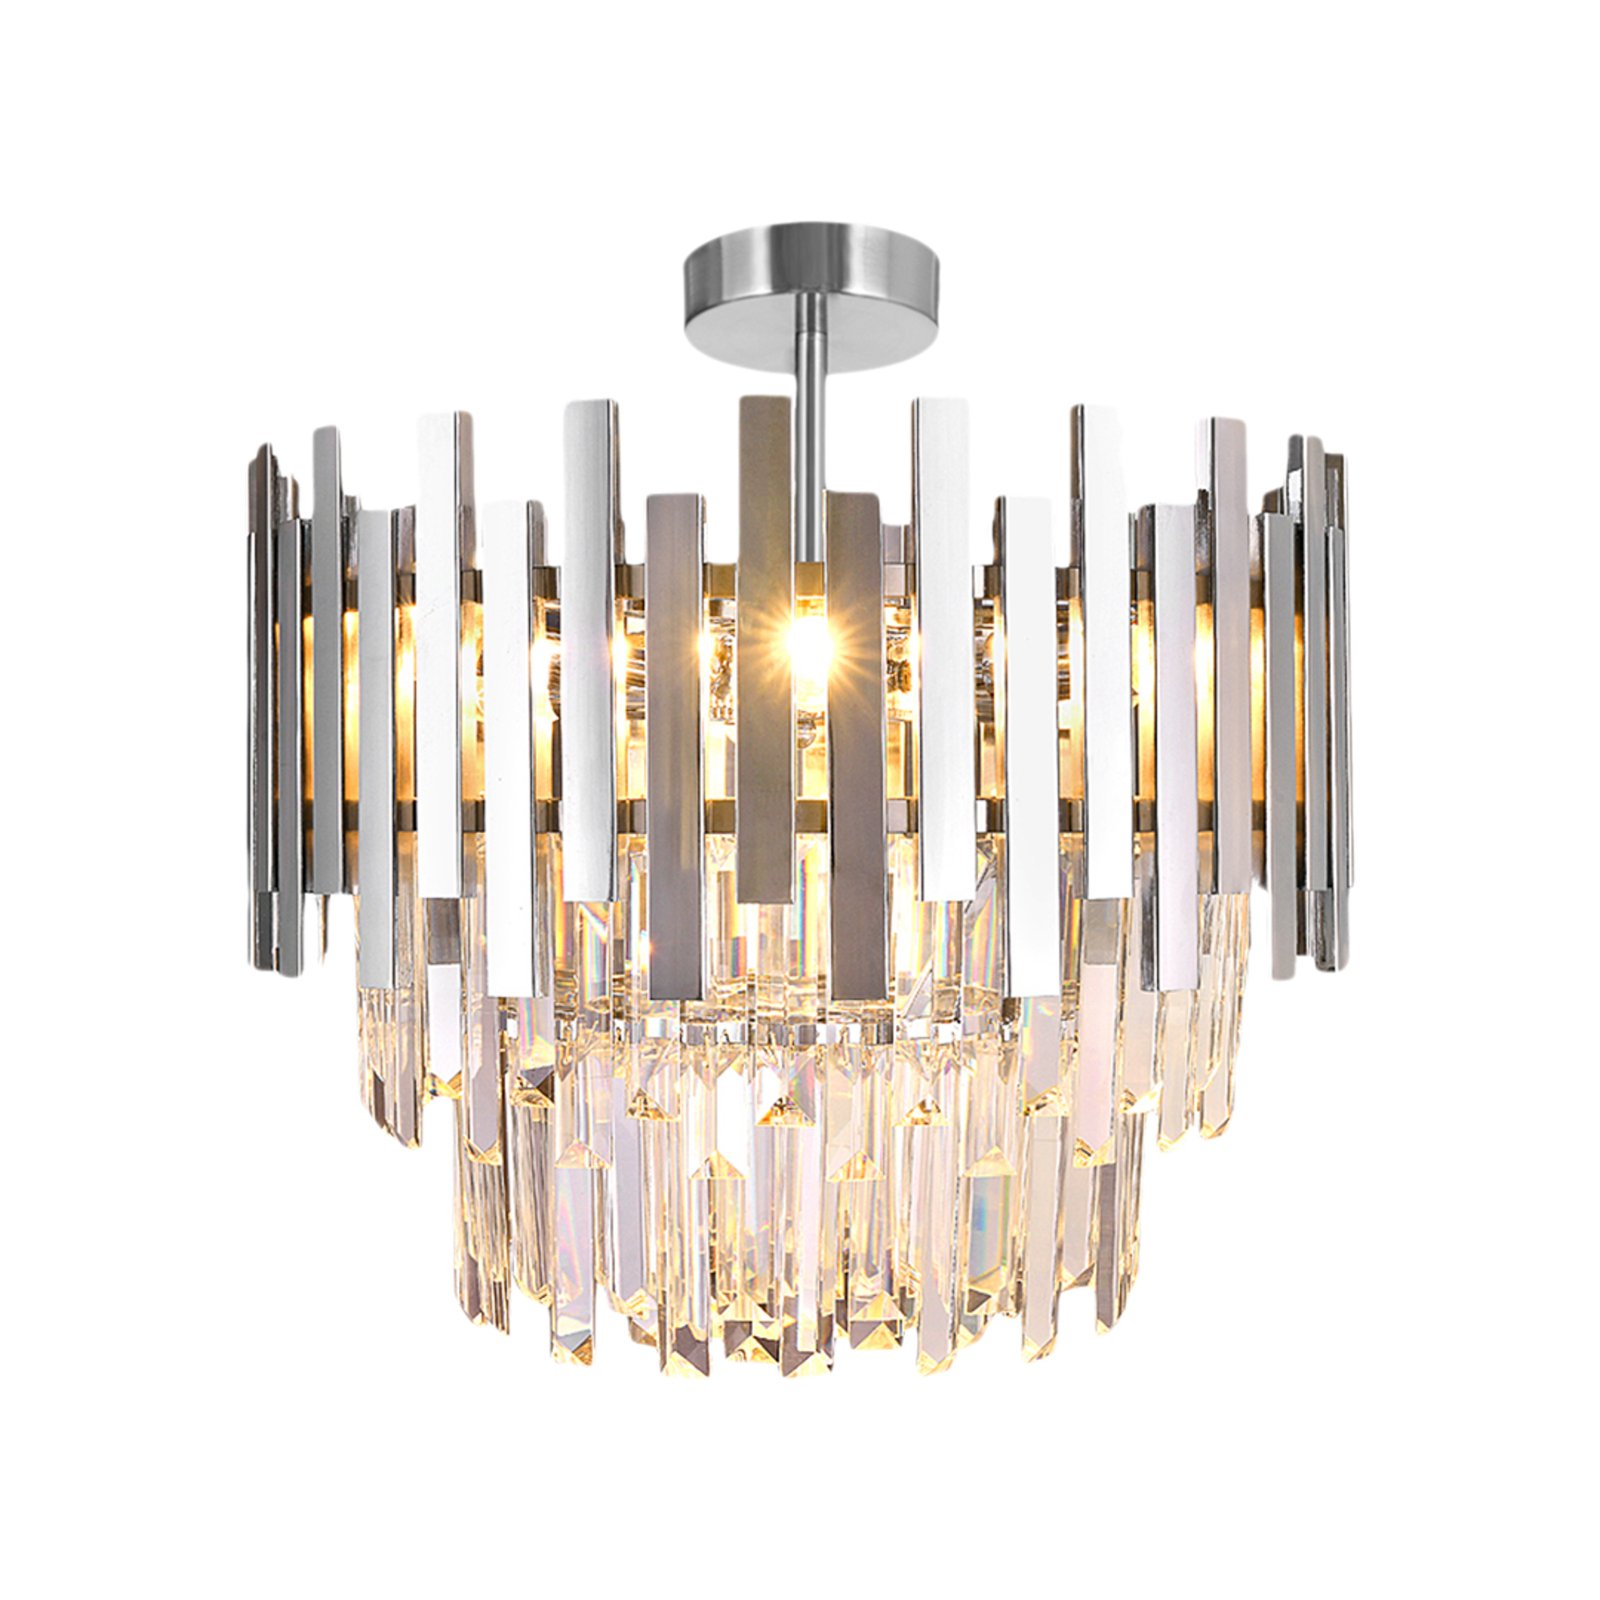 Loftslampe Aspen kromfarvet metal, glaskrystaller, Ø 45 cm